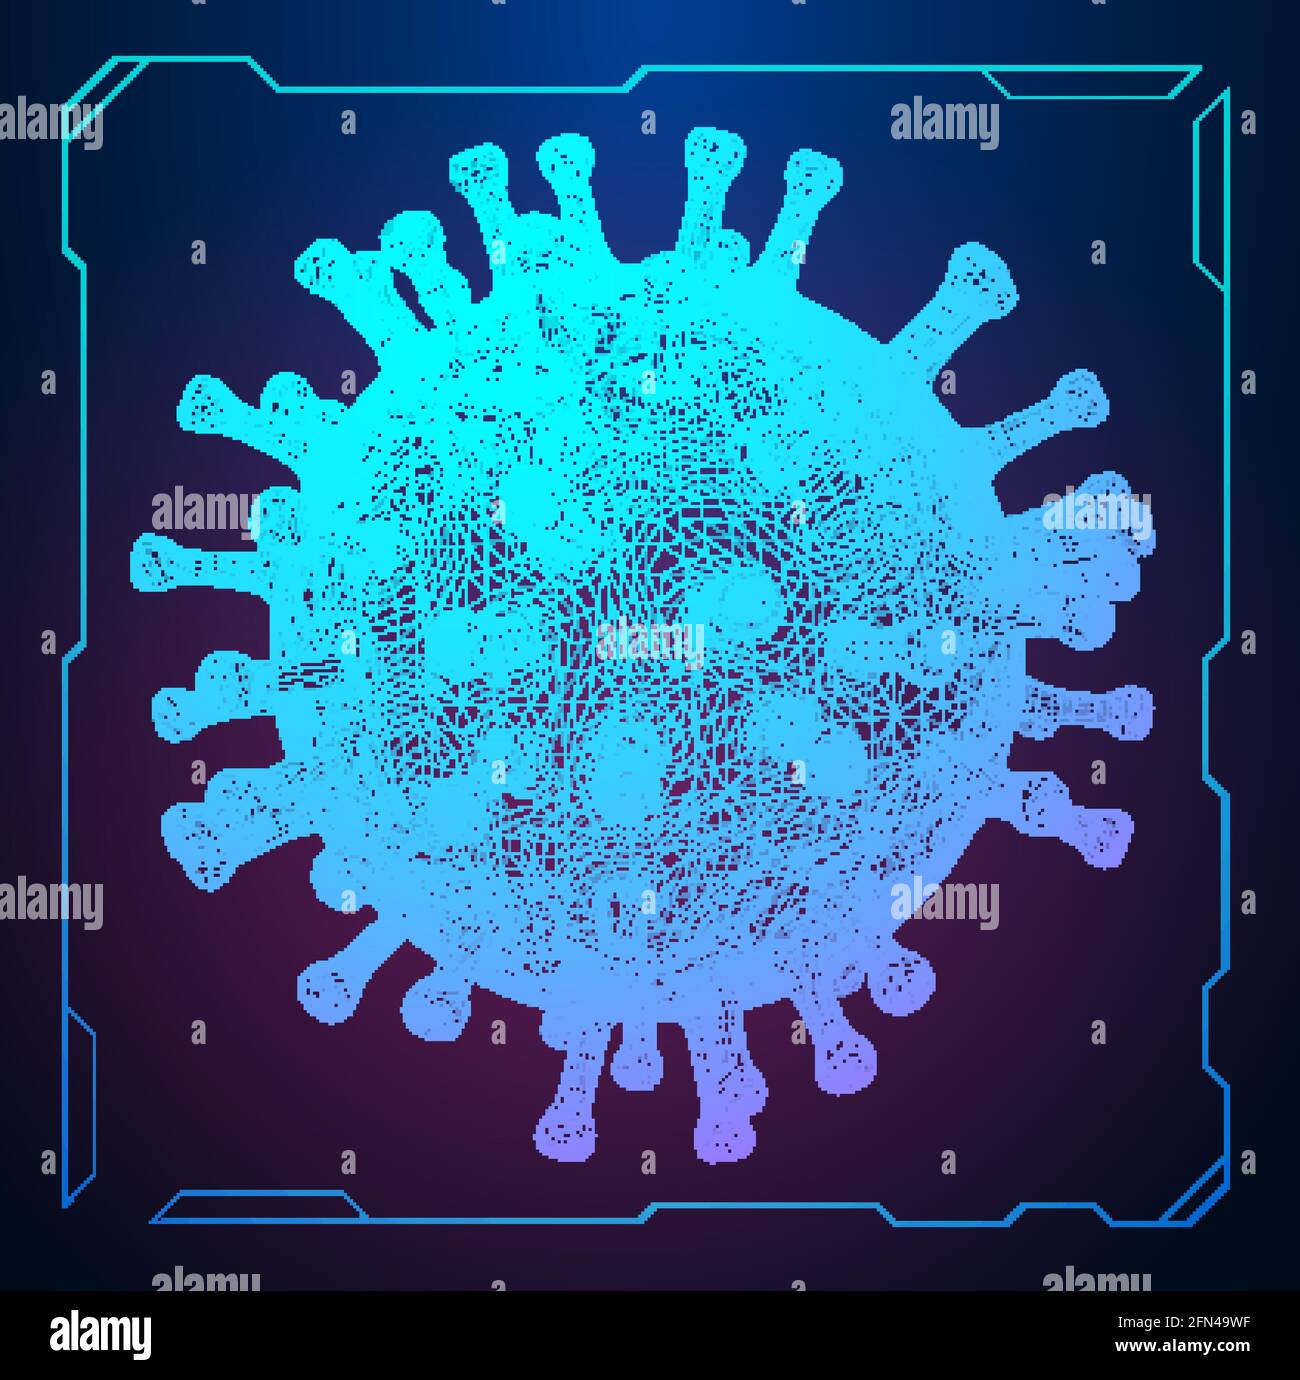 Covid 19 Coronavirus-Konzept. Gesundheitswesen medizinischen Hintergrund Mikrobiologie. Globaler Pandemie-Hintergrund. Pandemie, Grippe, Corona Medizin Konzept. Stock Vektor